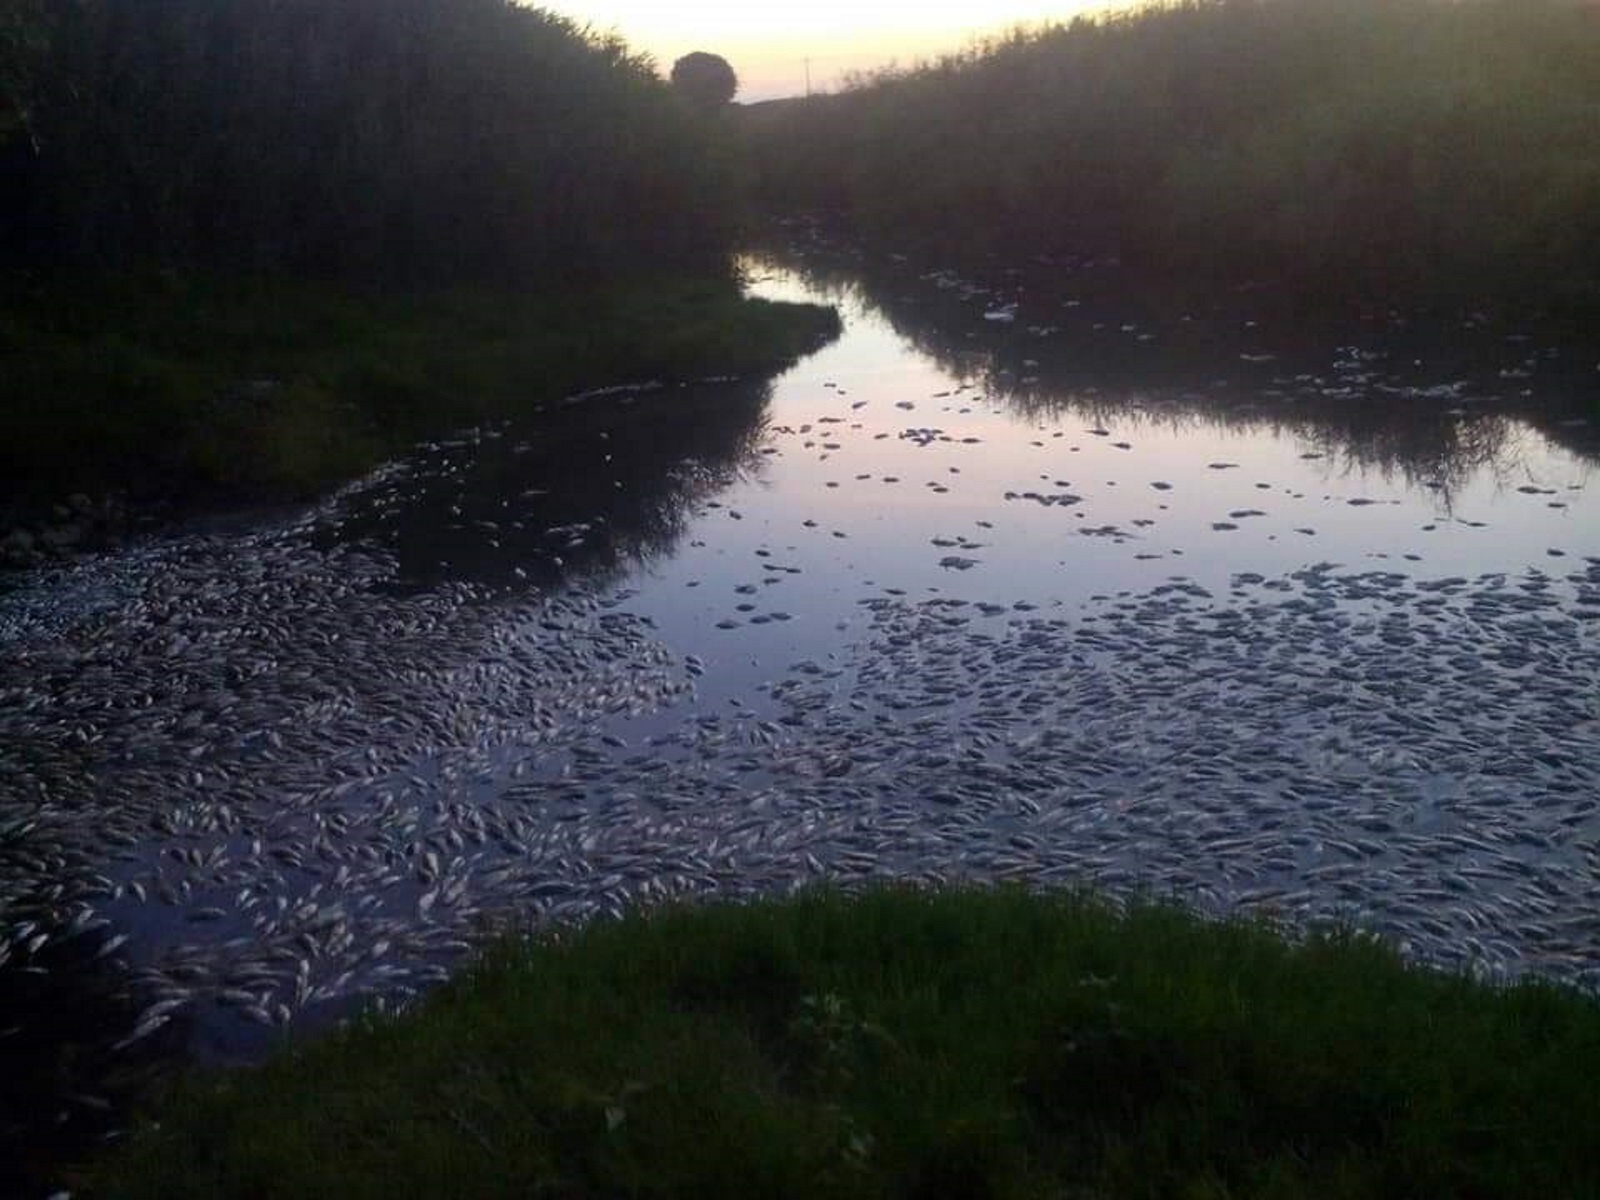 Εικόνες σοκ στον ποταμό Κομψάτο – Εκατοντάδες νεκρά ψάρια στις όχθες του